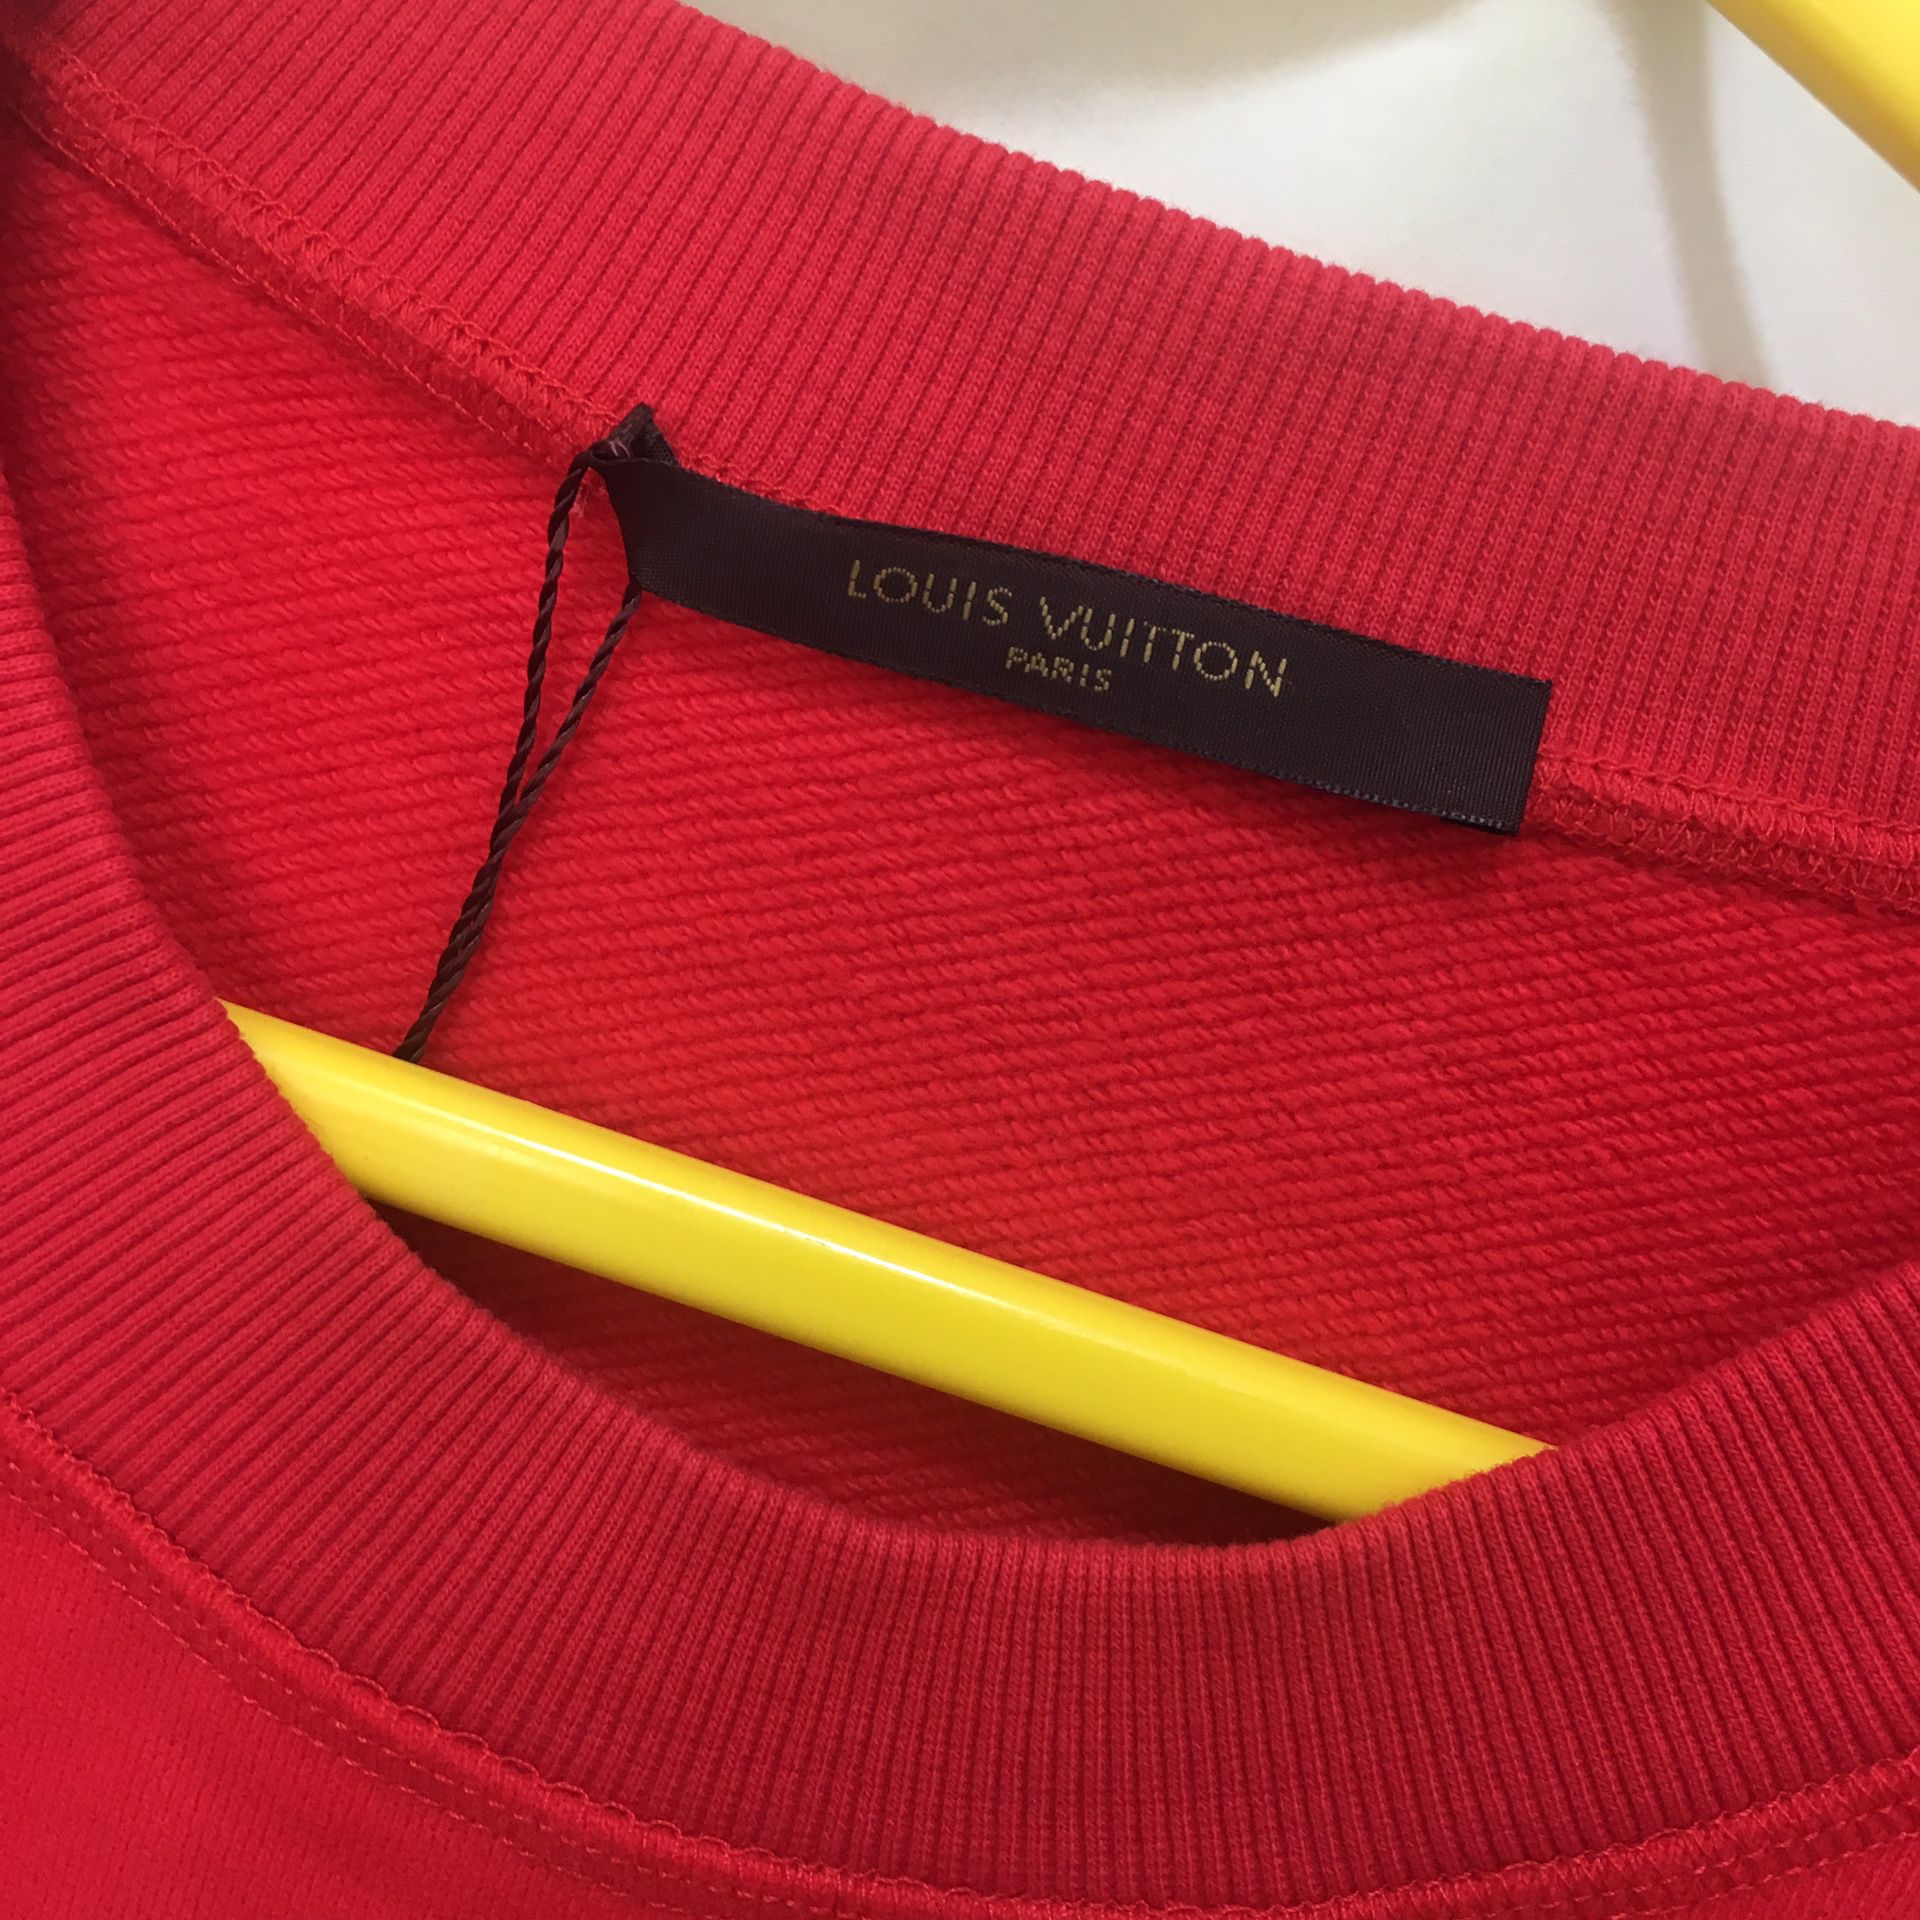 Original Supreme x Louis Vuitton Arc Logo Crewneck Sweatshirt Size M! for  Sale in Key Biscayne, FL - OfferUp